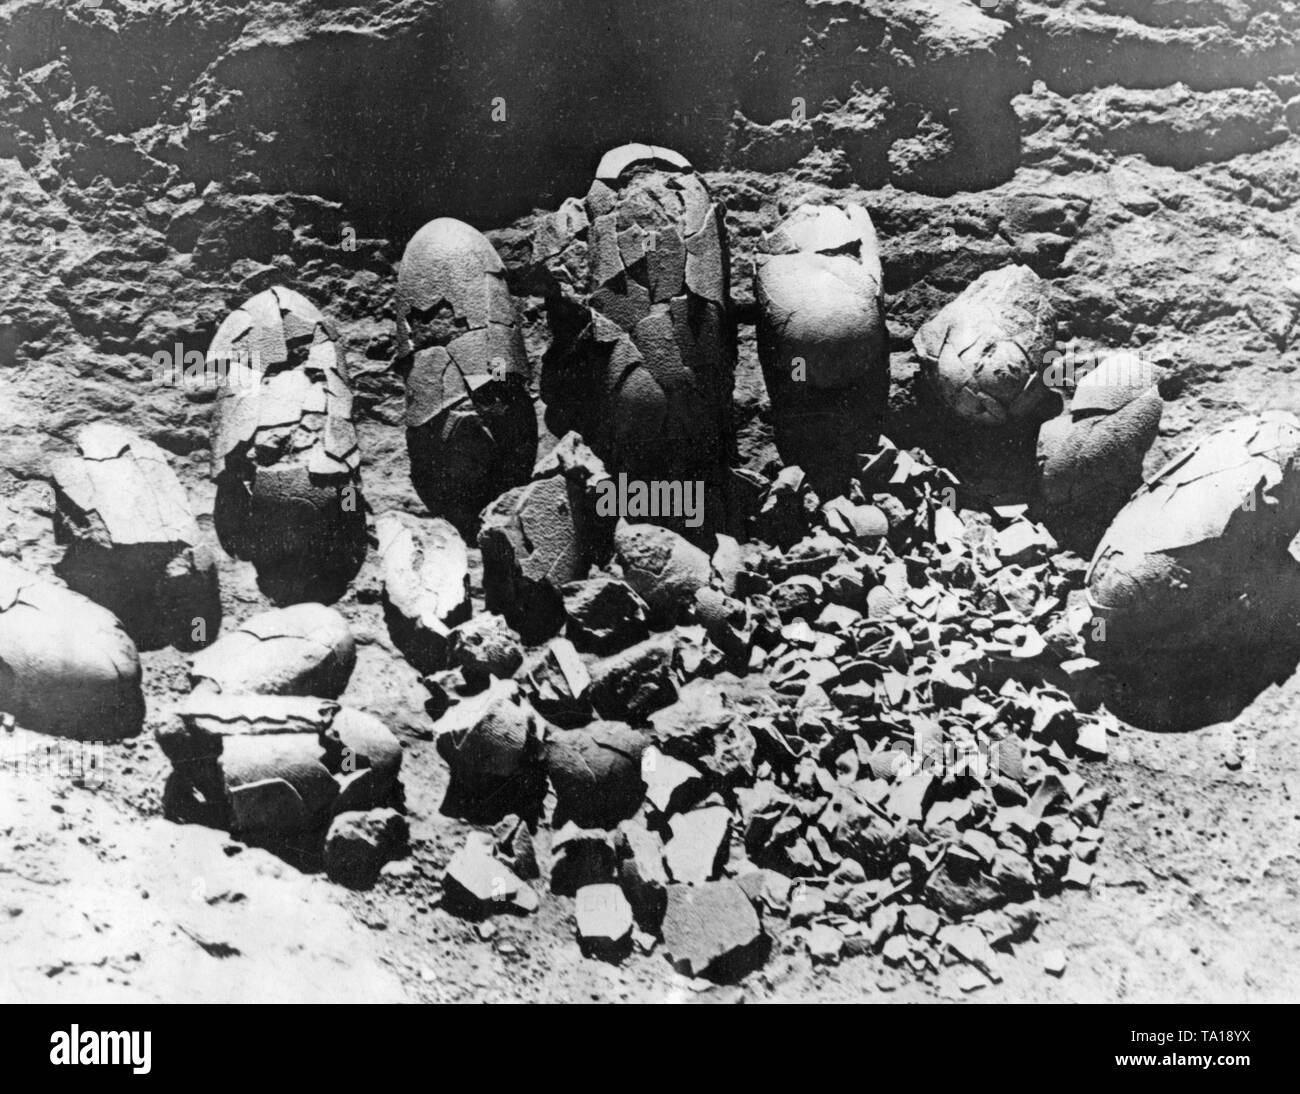 Cette photo montre le contenu d'un nid avec des œufs qui sont 100 millions d'années, trouvé en Mongolie lors d'une expédition. Ces œufs ont été exposées dans le Musée Américain d'histoire naturelle de la même année. Banque D'Images